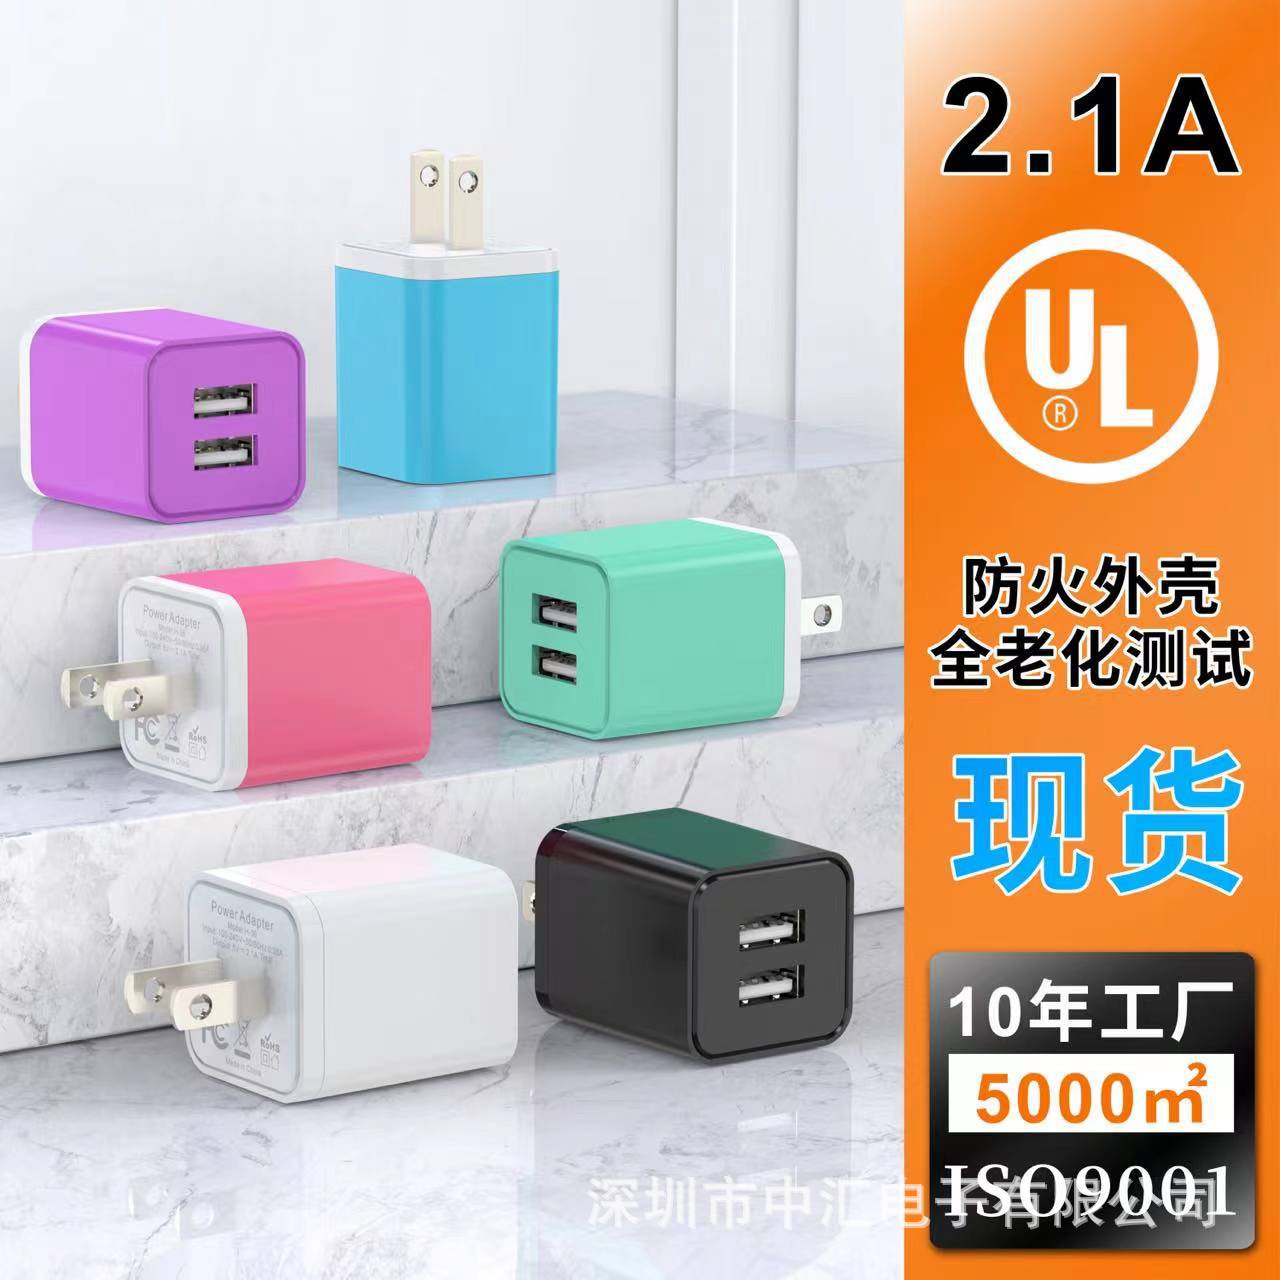 直充USB双口5V2.1A美规彩色充电器适用于智能手机工厂直销批发